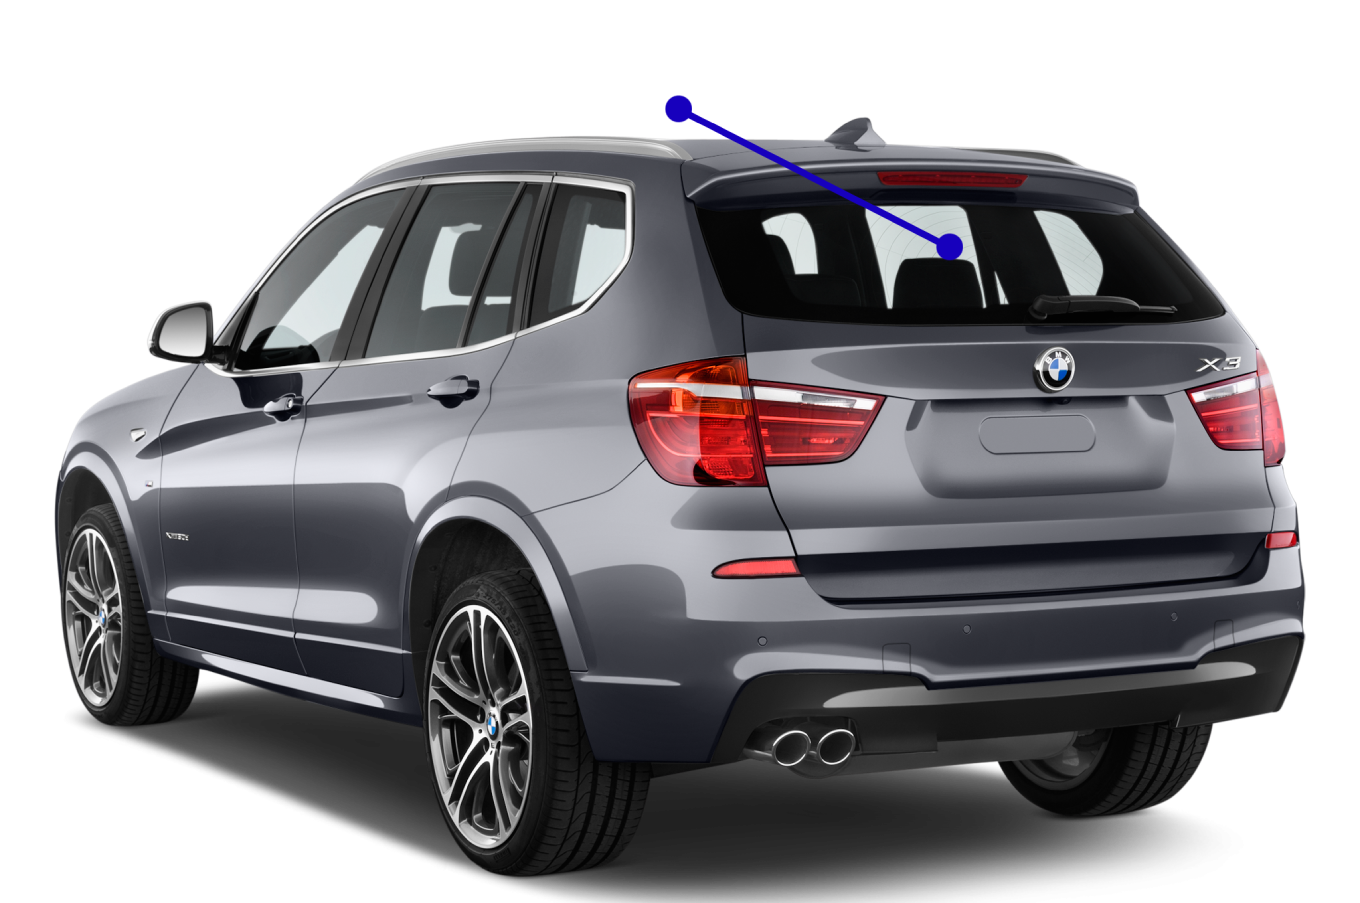 BMW X3 Rear windshield